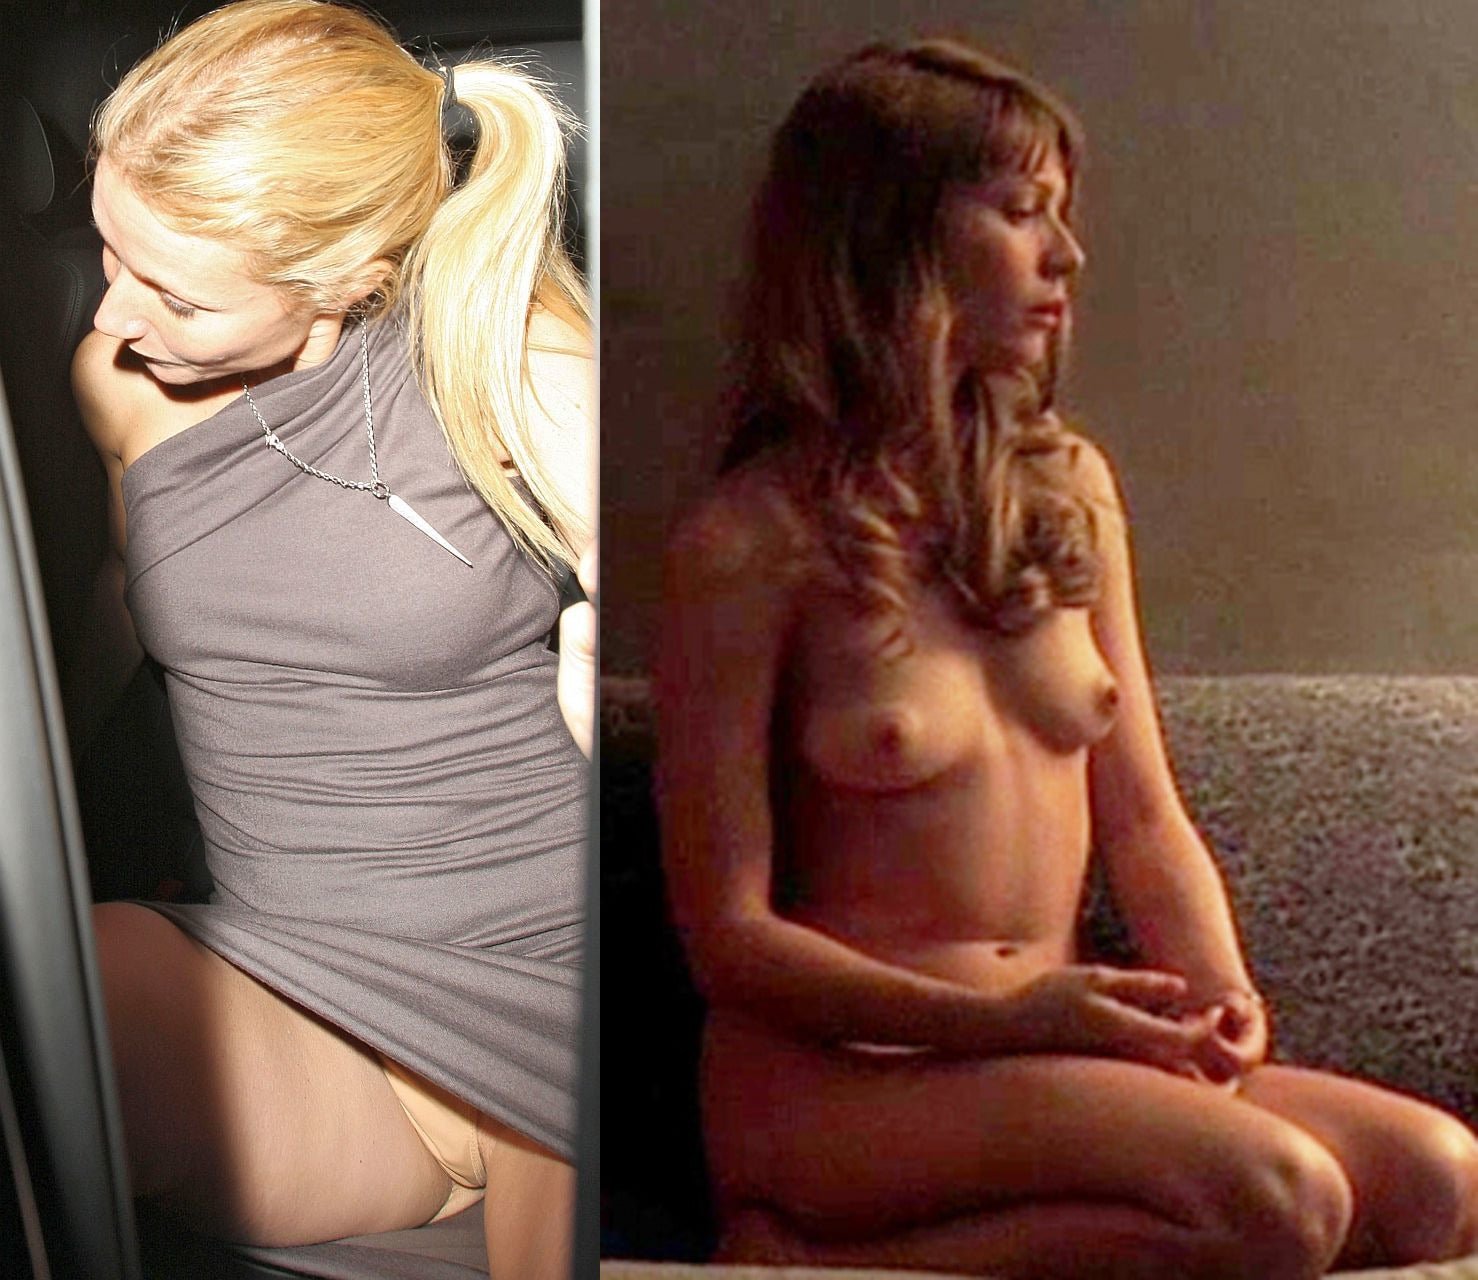 Gwyneth Paltrow Nude Photos